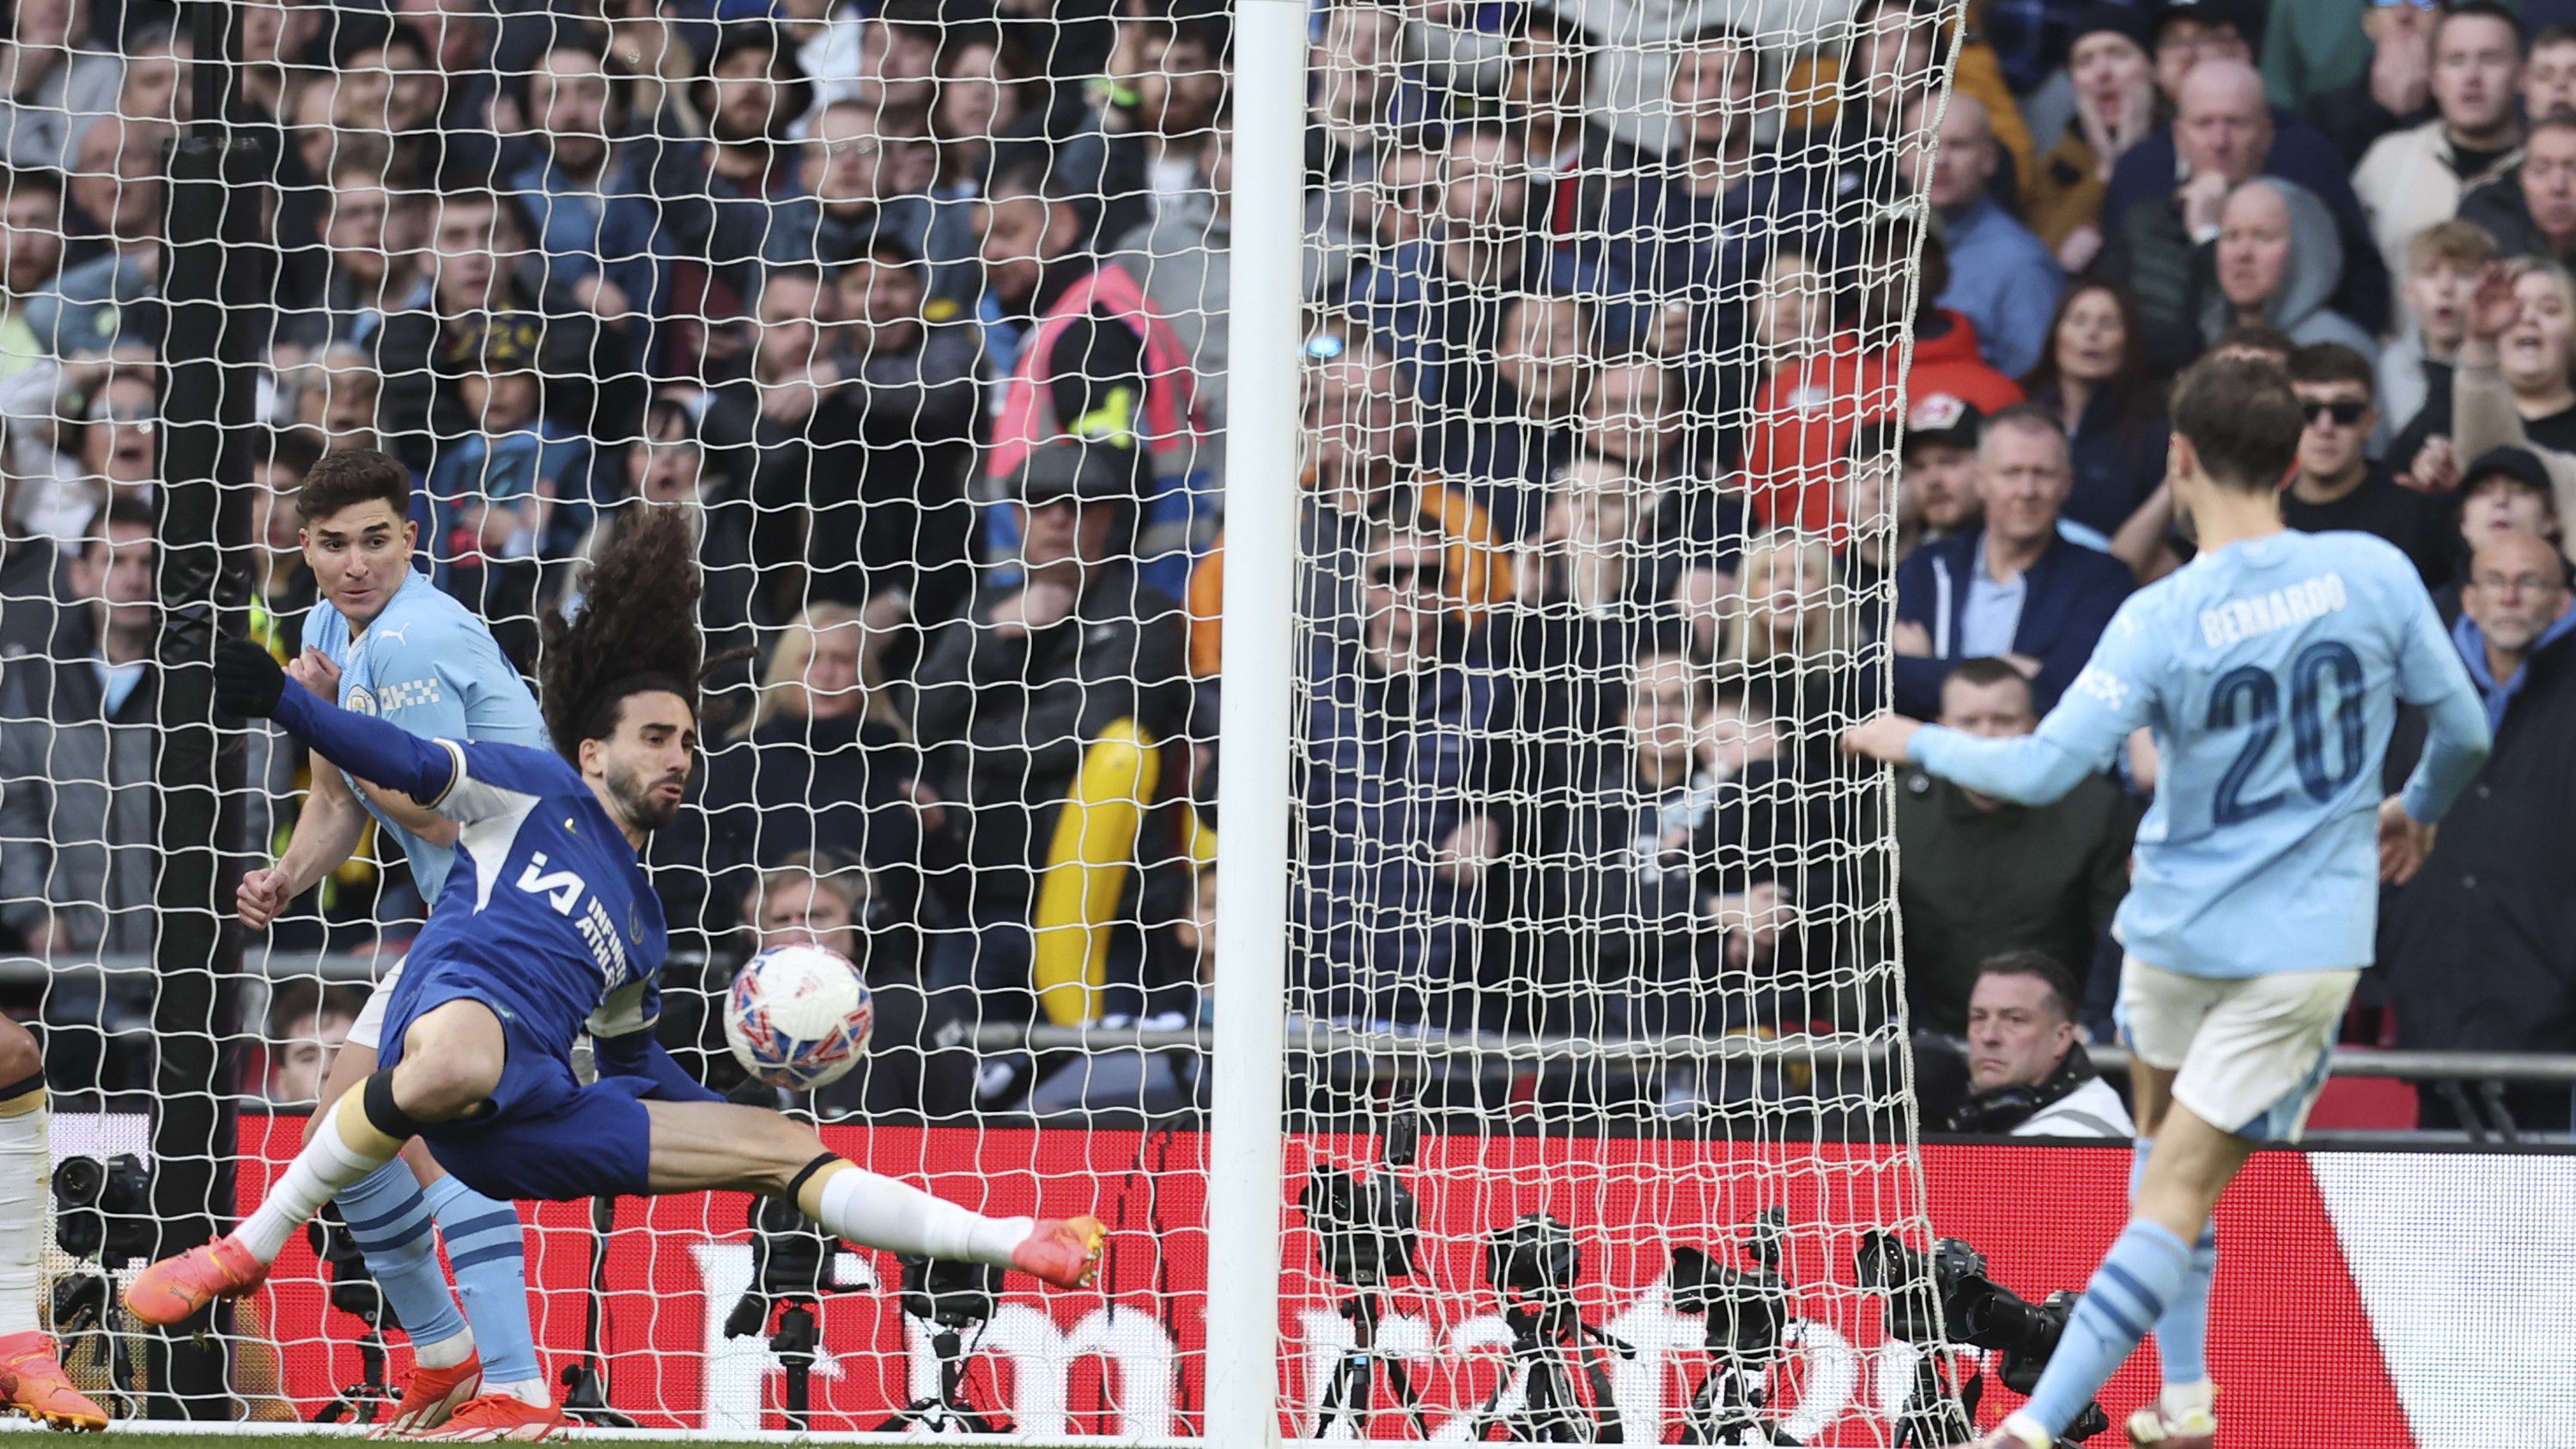 Az FA-kupa-elődöntőt eldöntő pillanat: Bernardo Silva lövése után a labda útban a Chelsea kapuja felé, a Manchester City a portugál játékos góljával jutott a fináléba